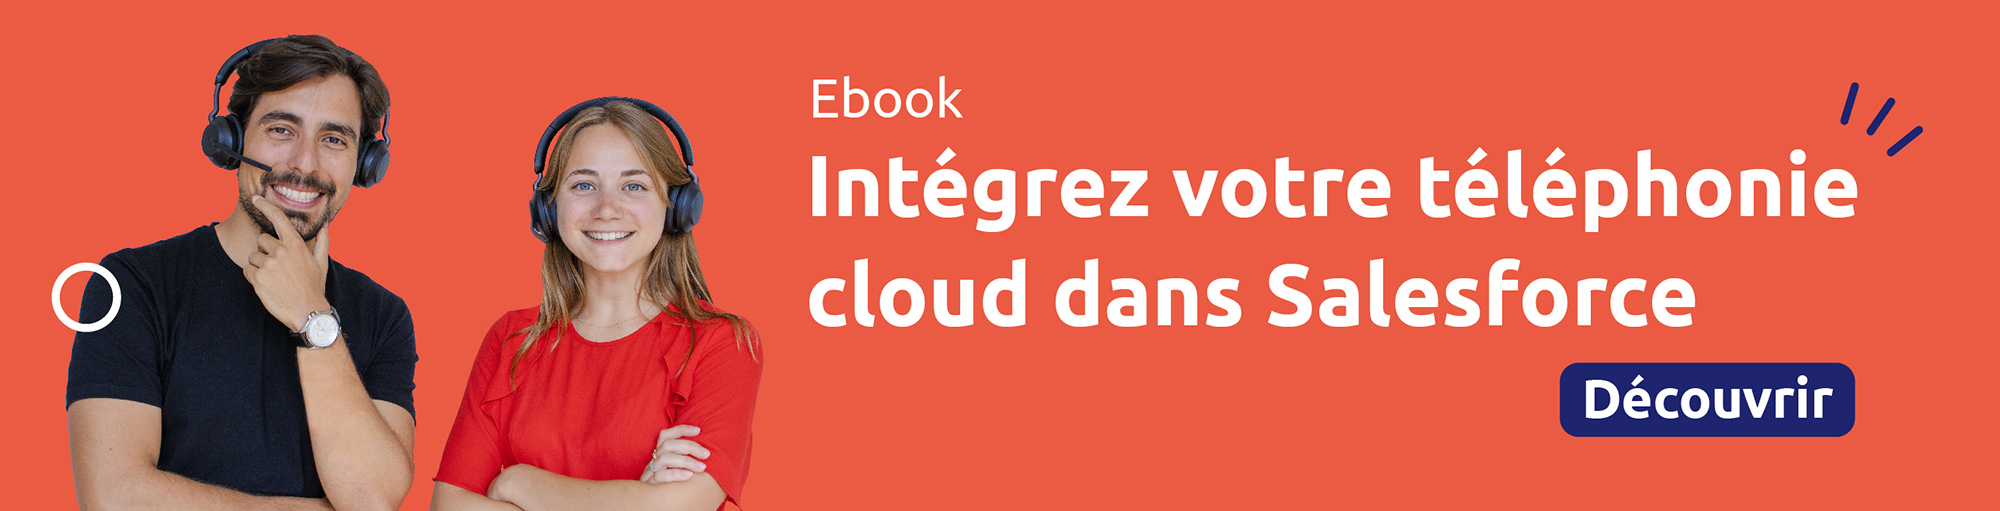 Ebook Salesforce Service Cloud Voice